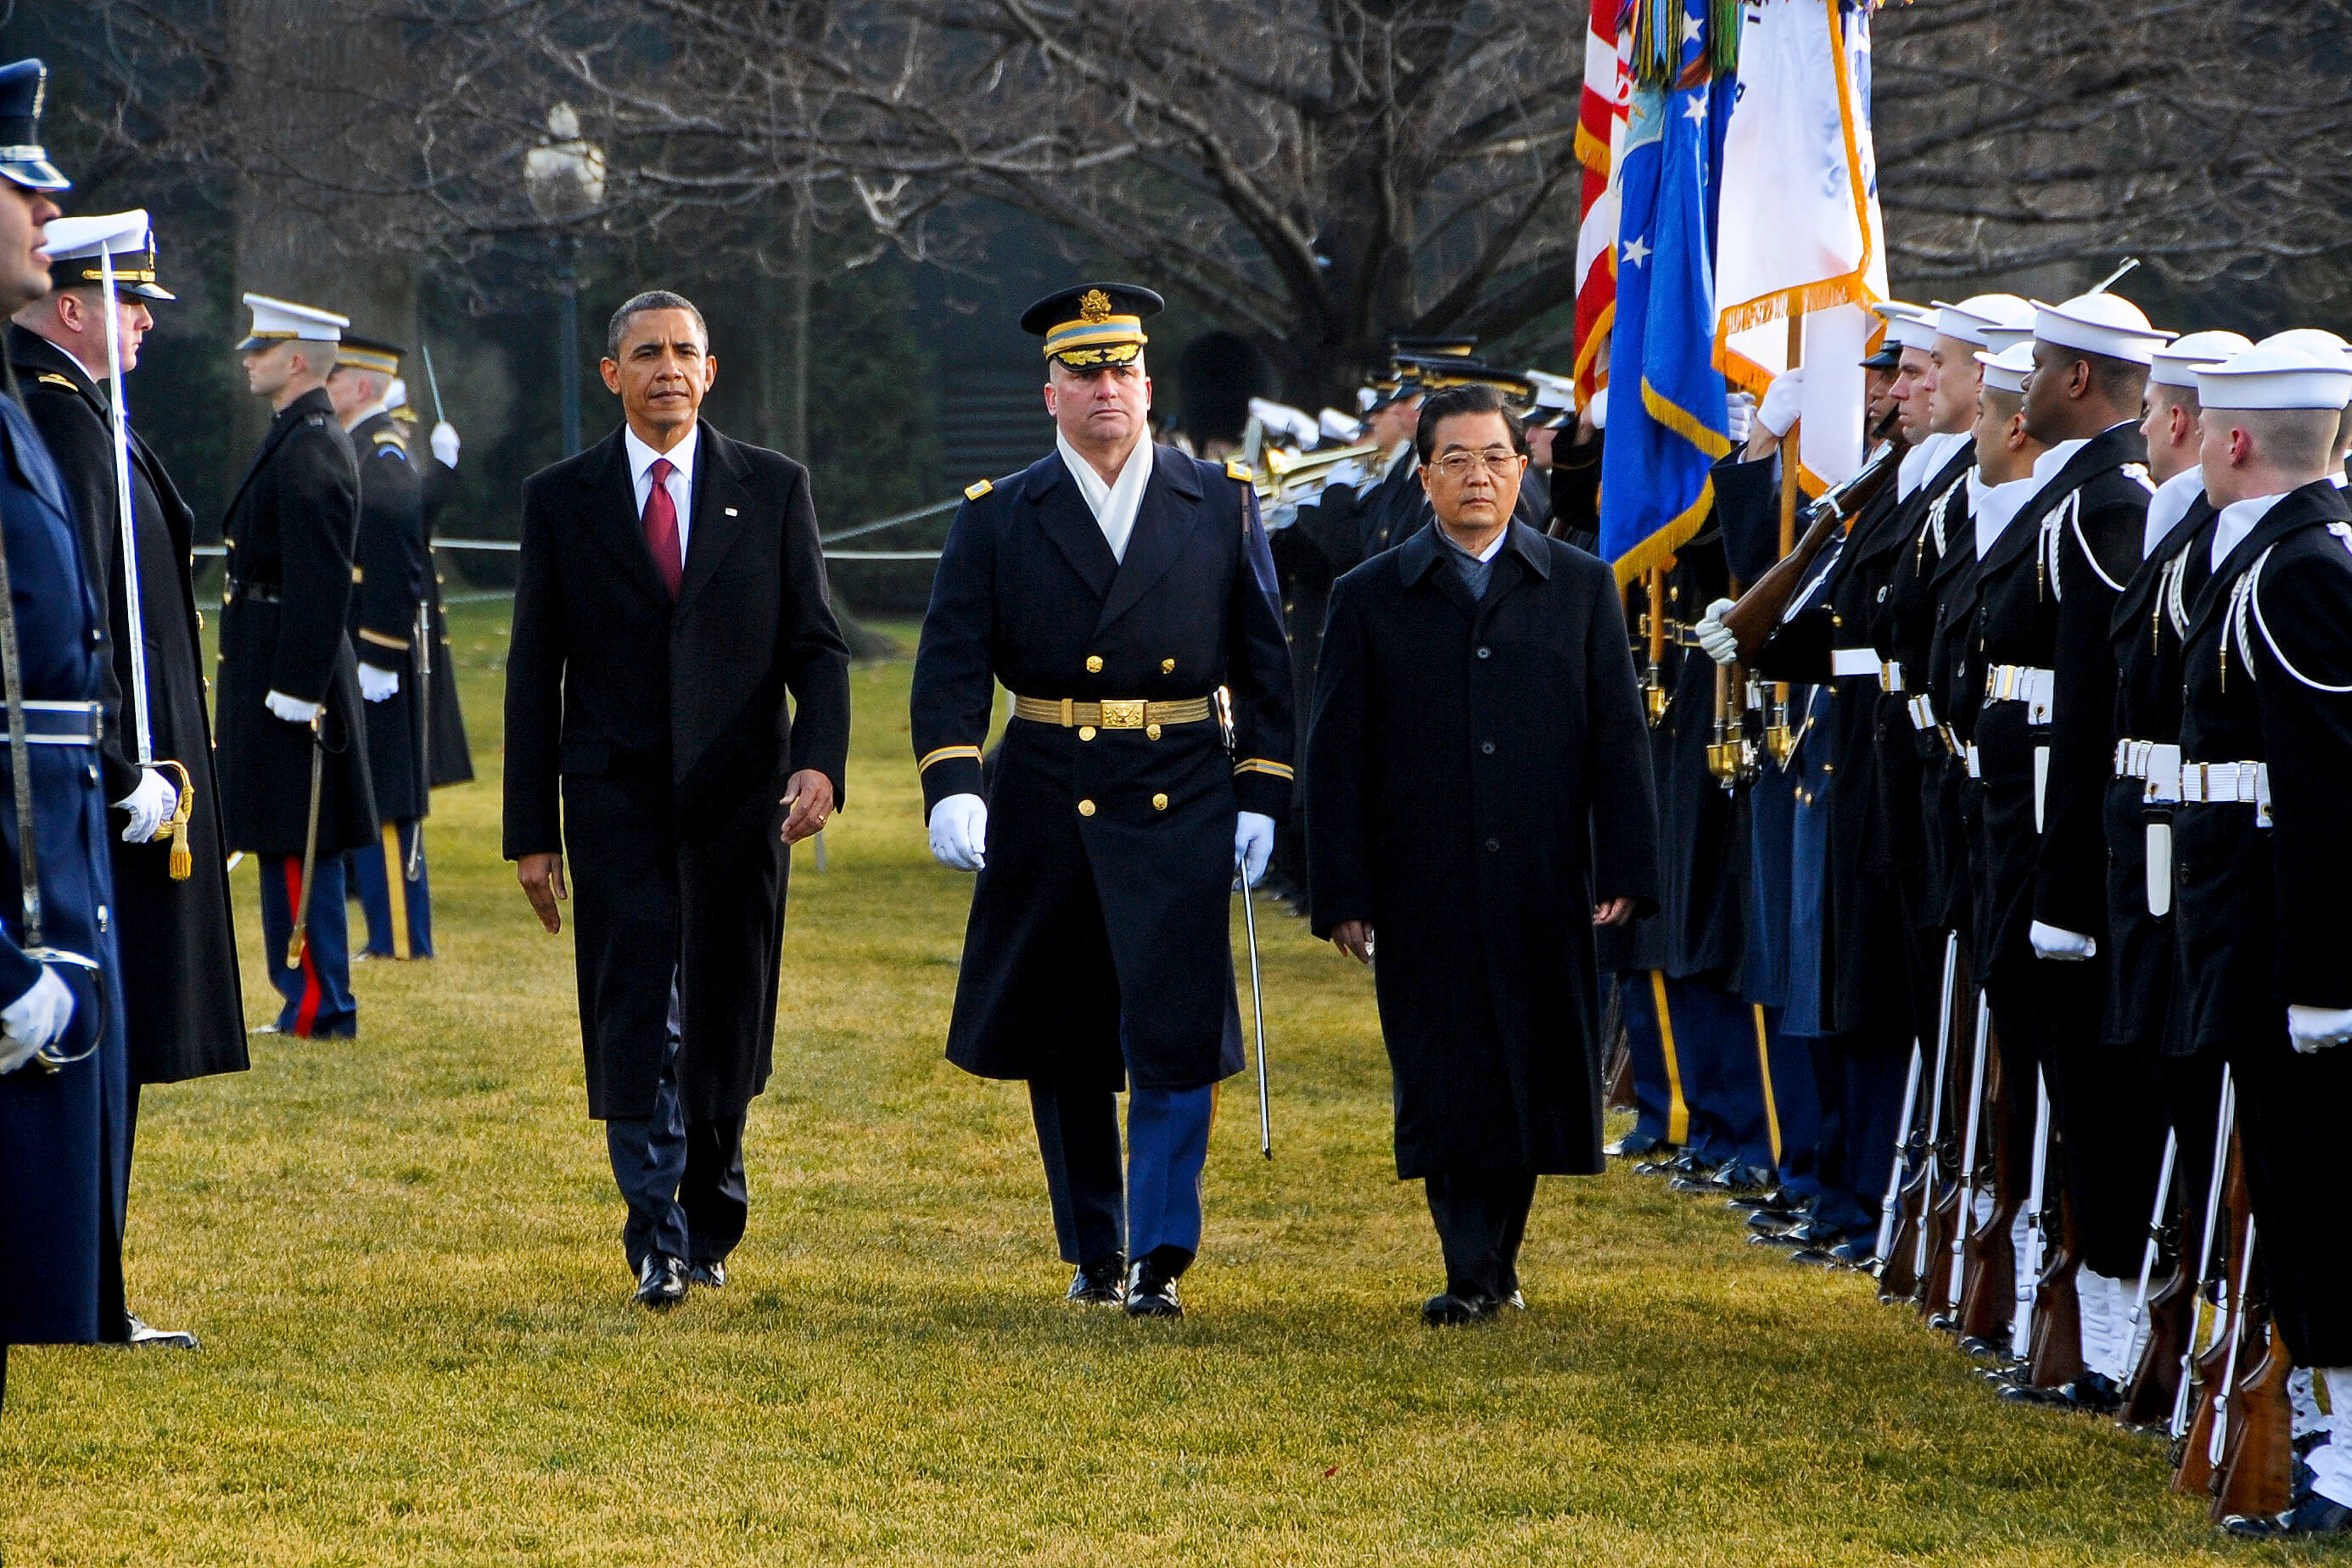 De toenmalige presidenten Barack Obama en Hu Jintao in 2011. © Flickr / The U.S. Army